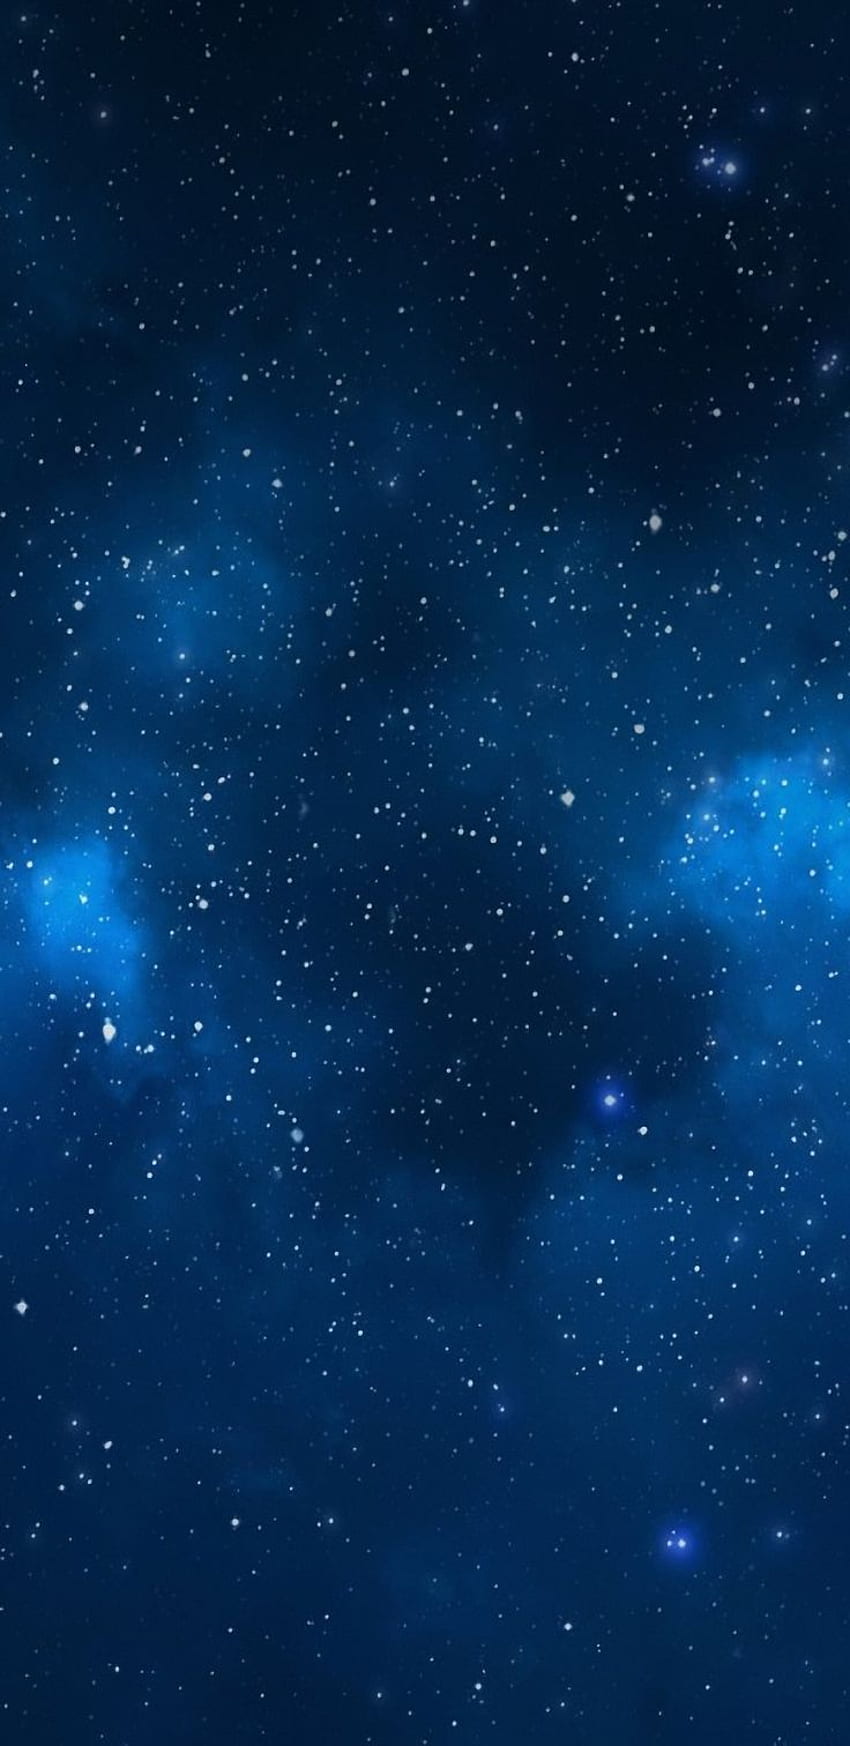 Escuro, azul, galáxia, tranquilo, beleza, natureza, noite, céu, estrelas, Samsung. Fundo azul, azul escuro, galáxia azul, Samsung Galaxy Star Papel de parede de celular HD